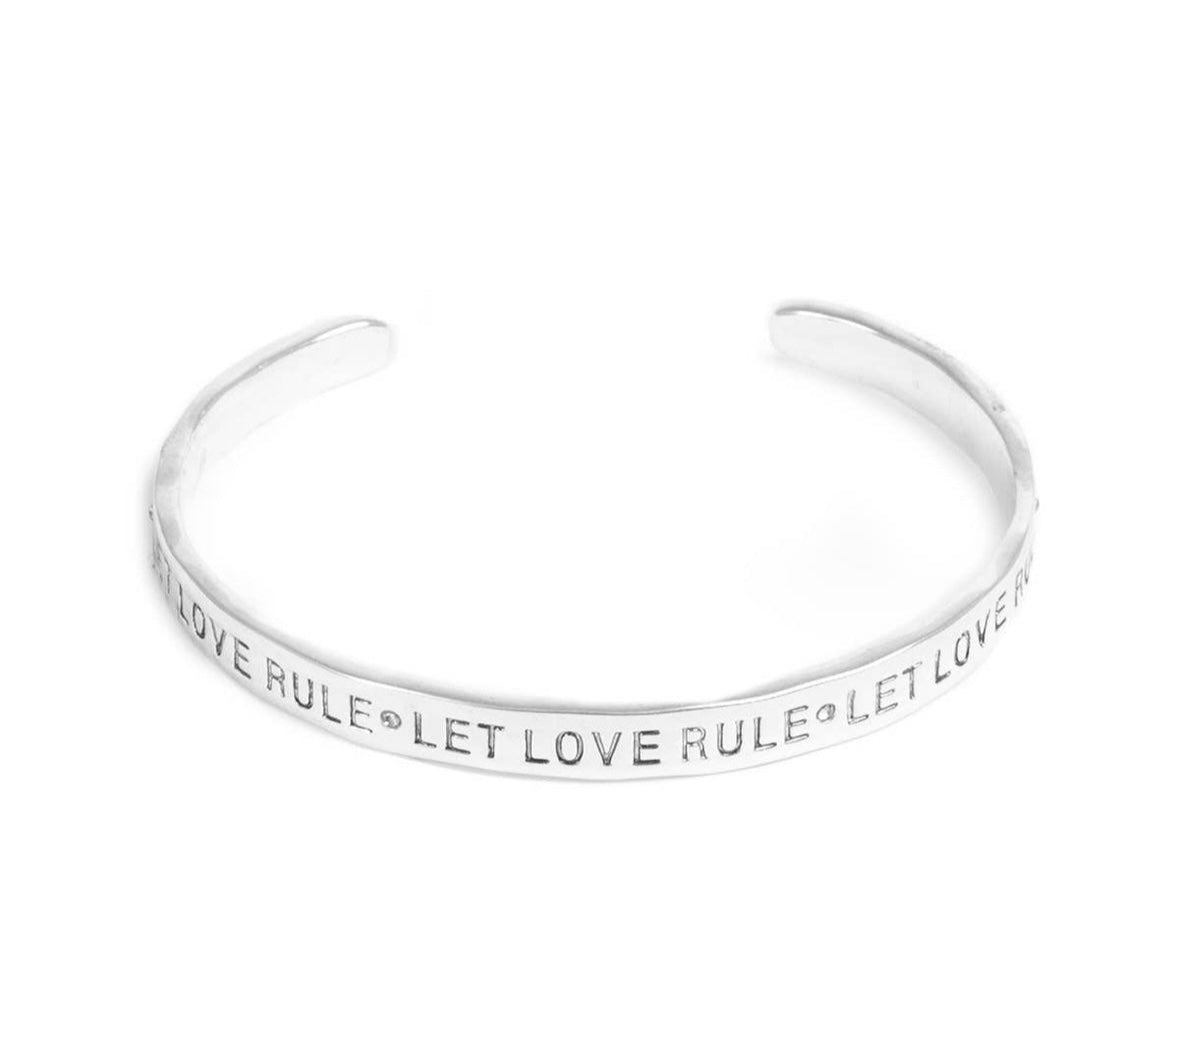 Let Love Rule Bracelet Cuff